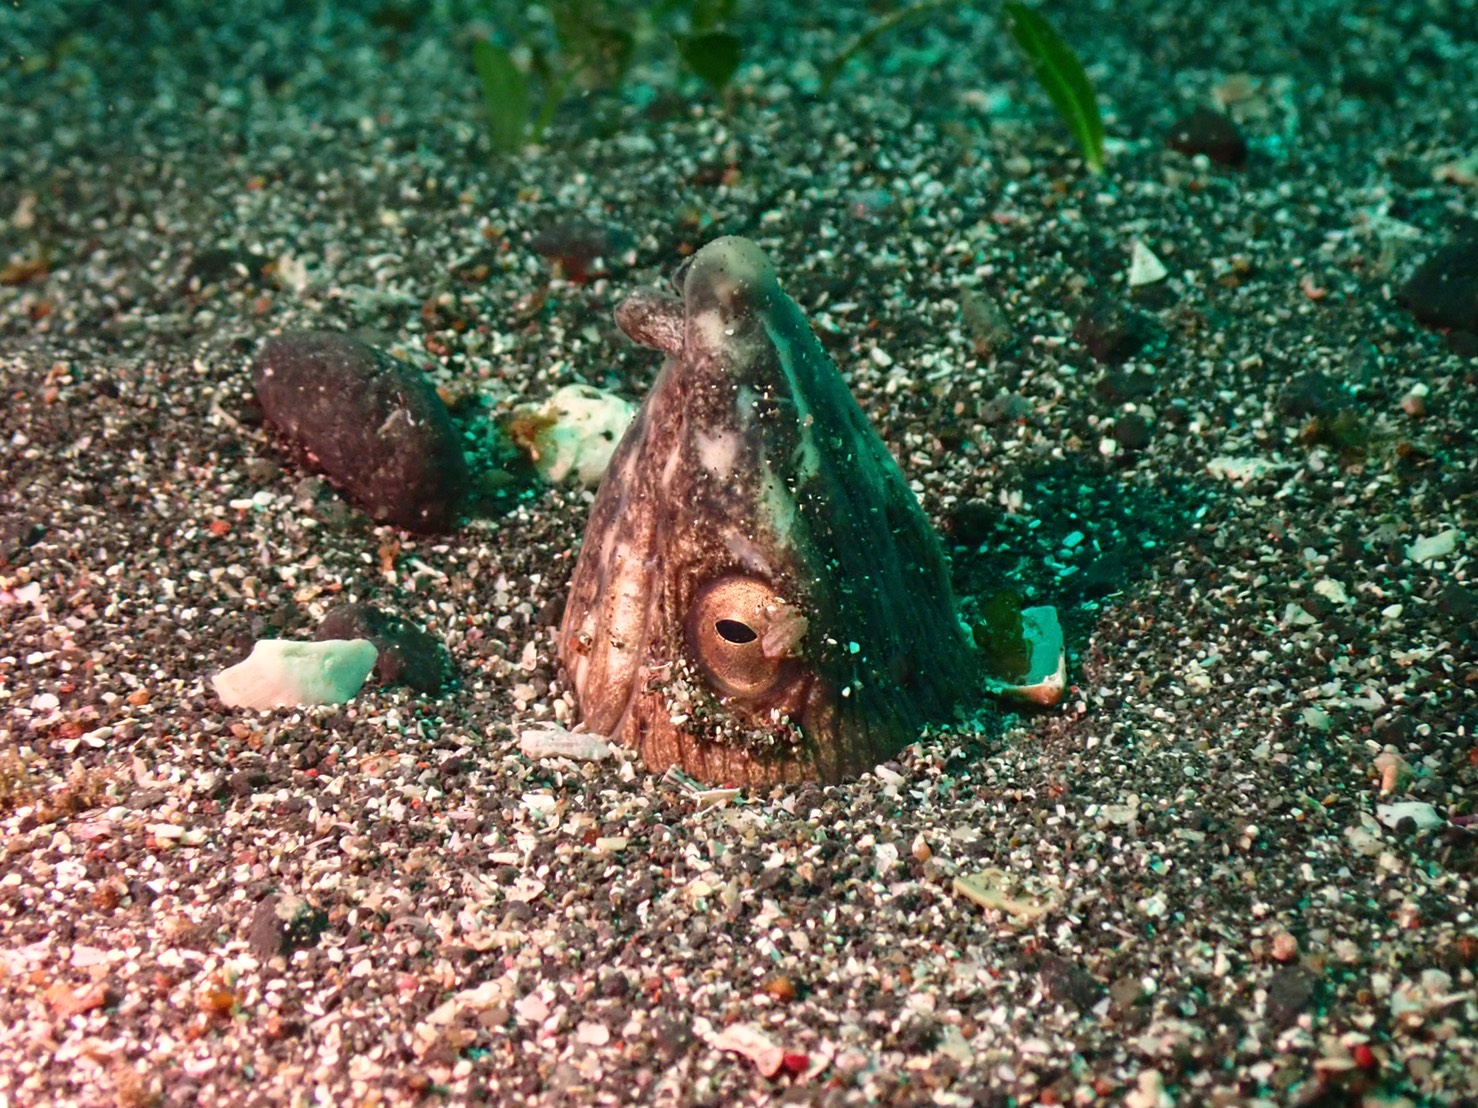 ダイナンウミヘビが海底の砂地から顔だけを出している様子。